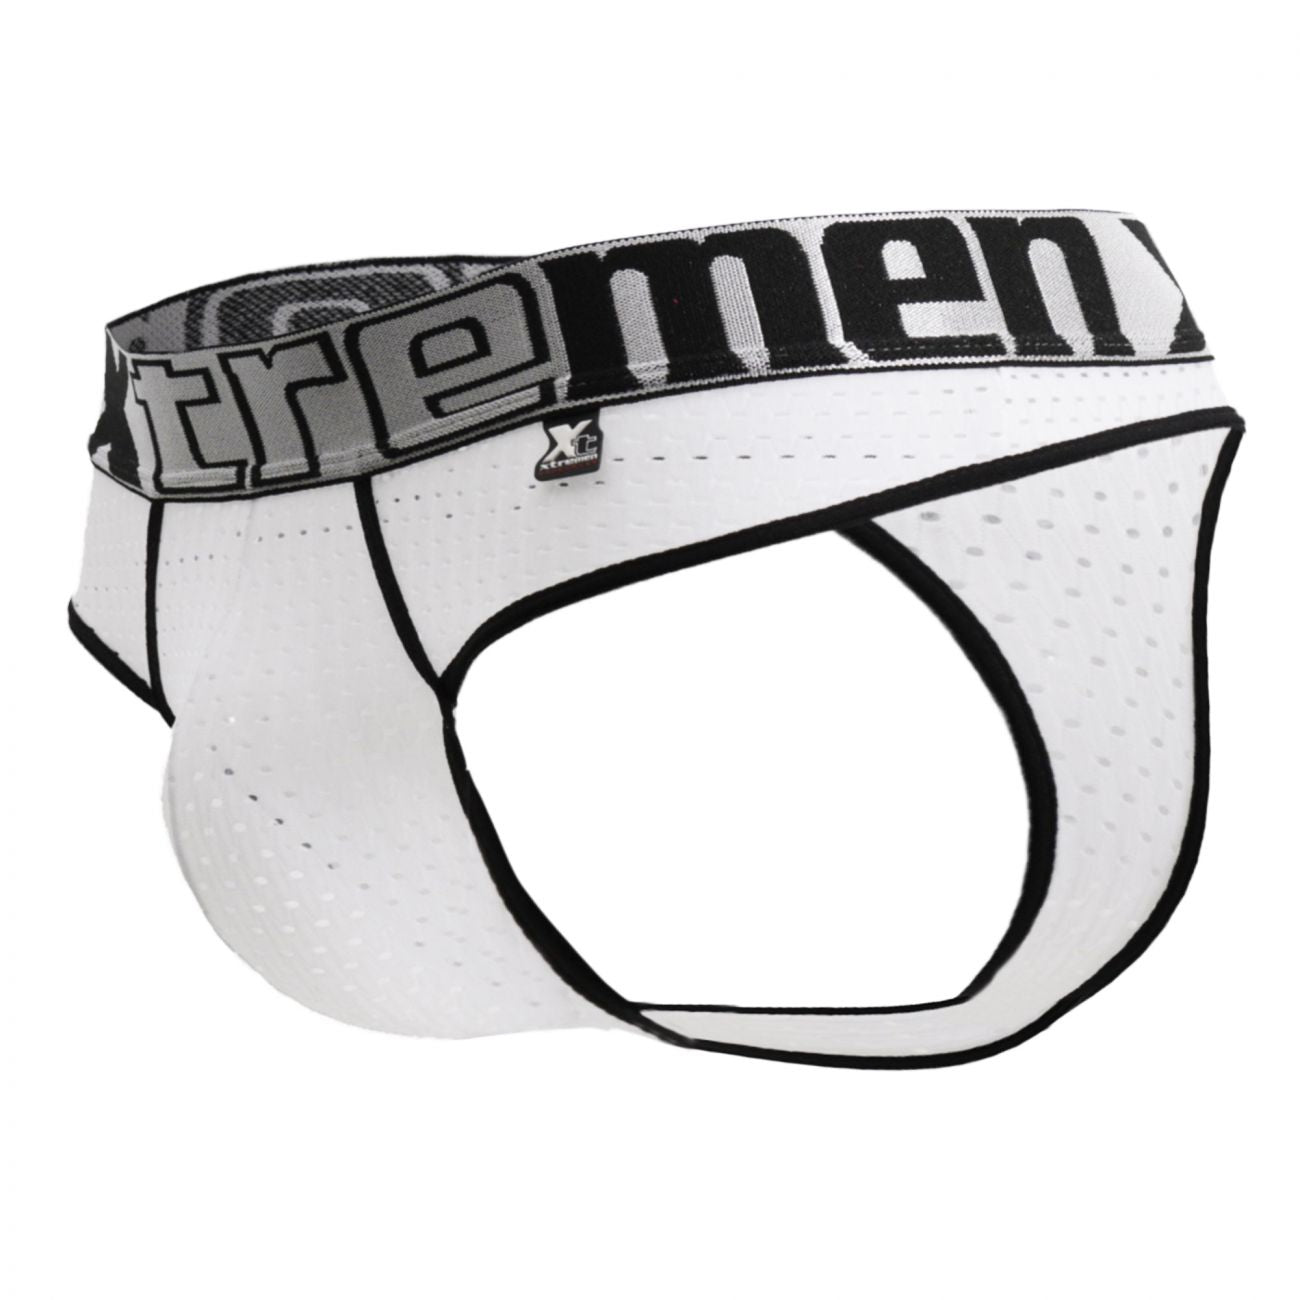 Xtremen 91036 Mesh Thongs